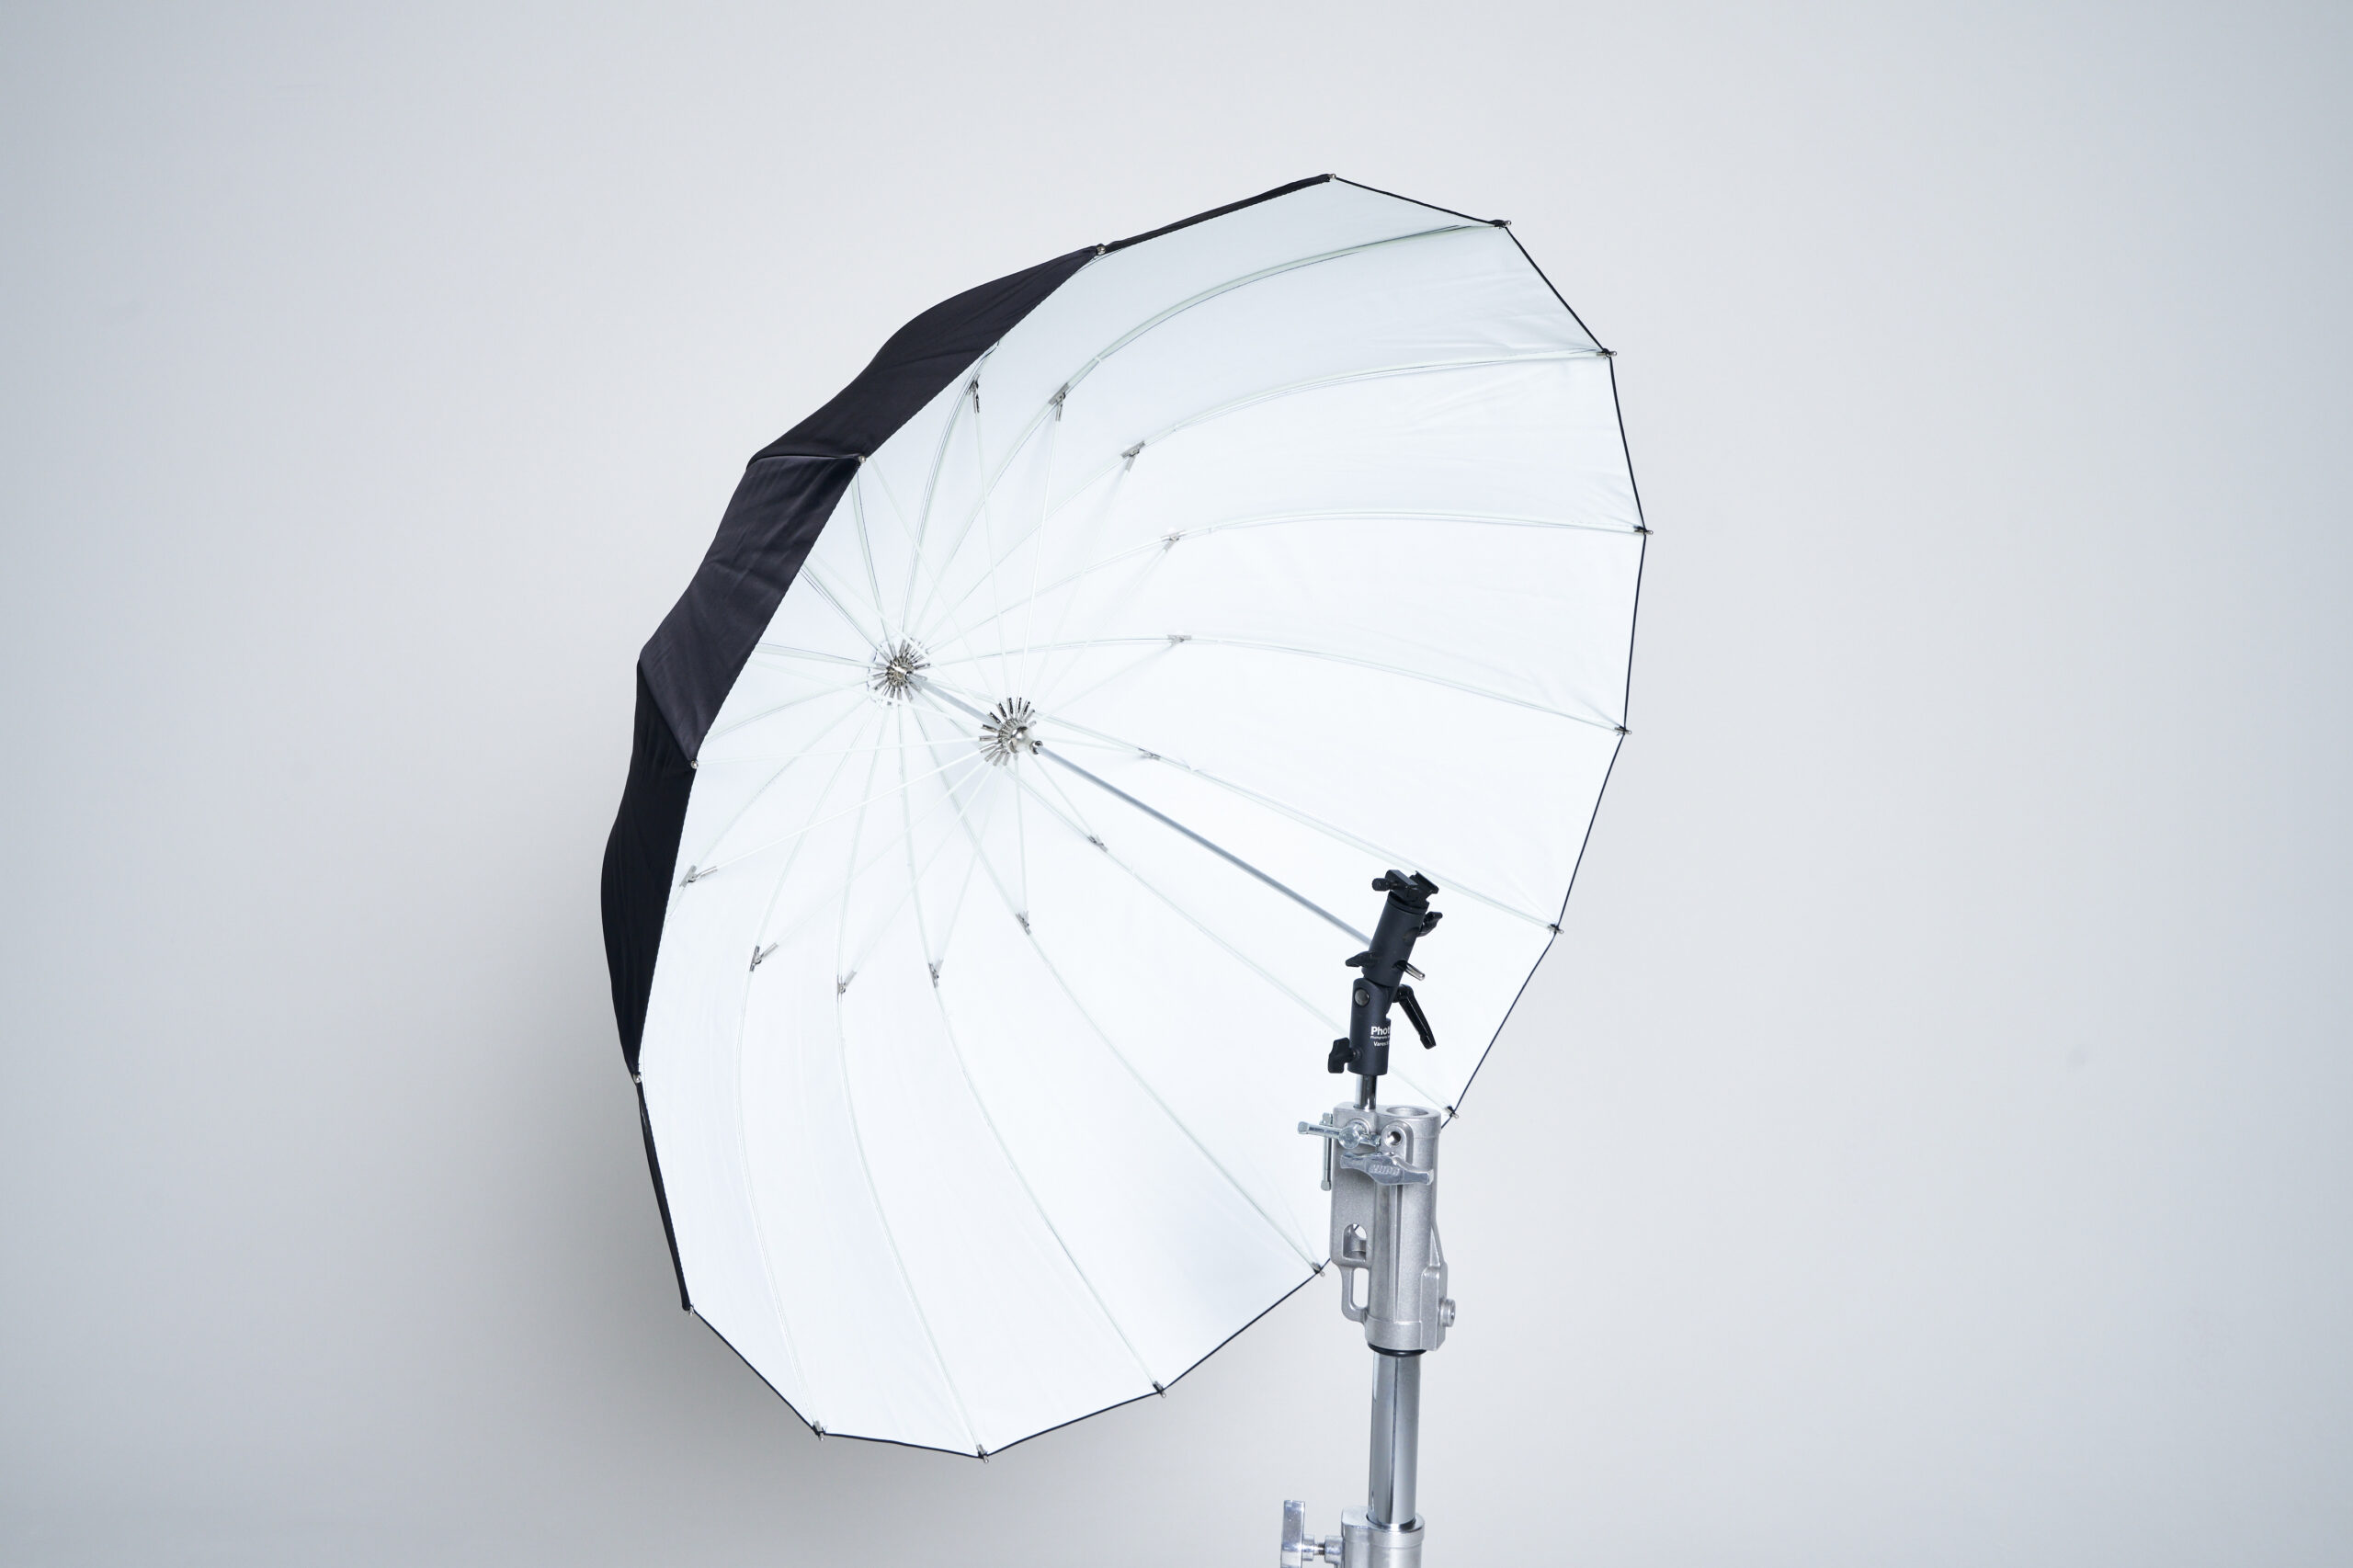 105cm-umbrella-black-white-Elinchrom-